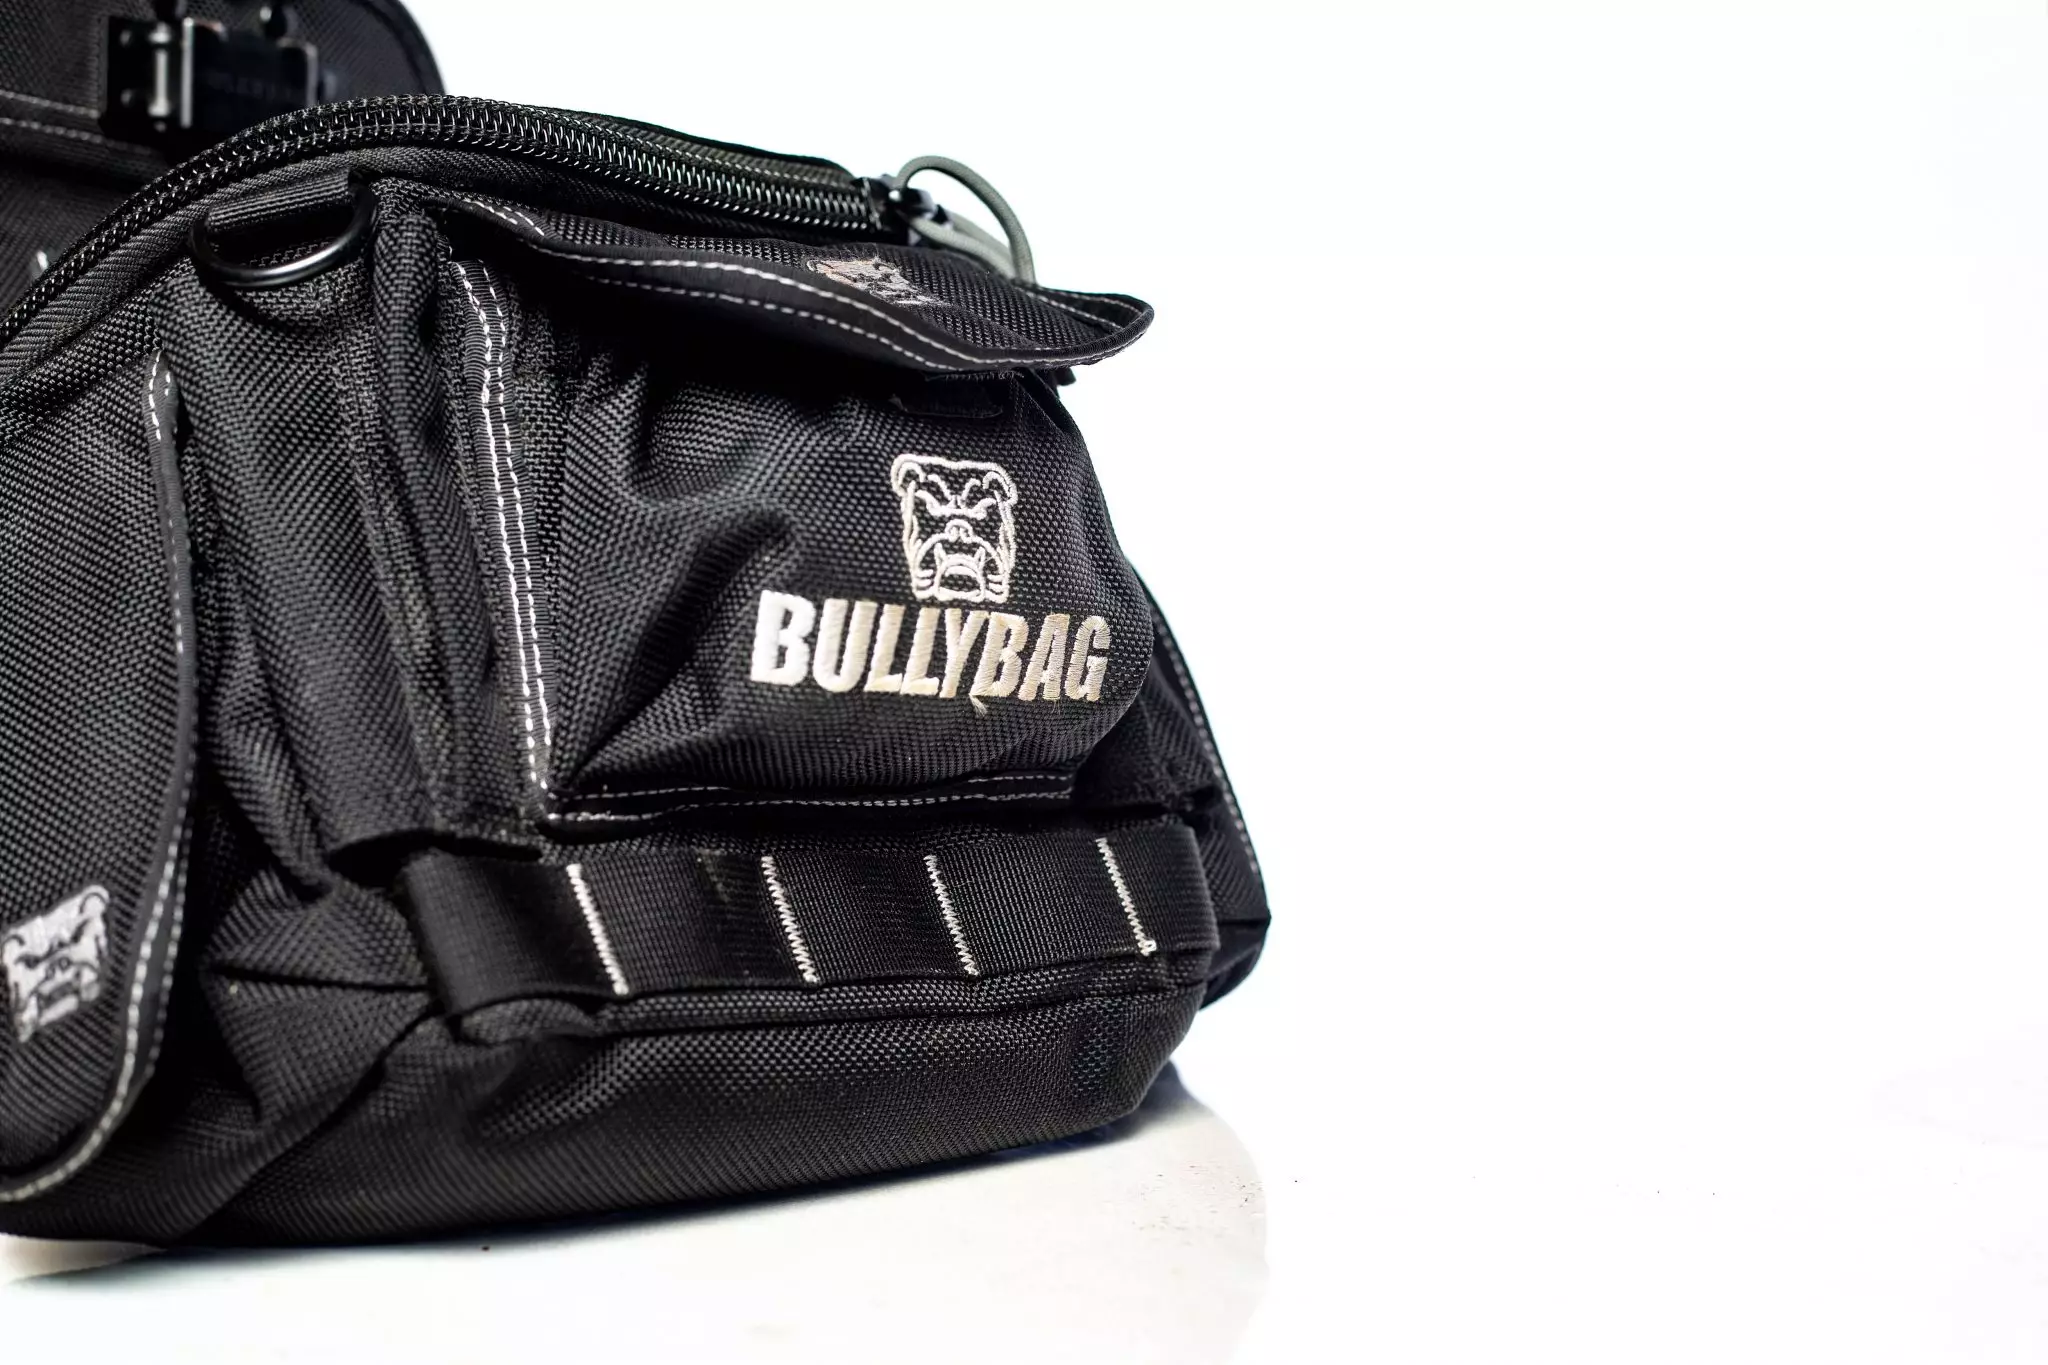 Bullybag®G2 Ultra Pouch | Bullybag